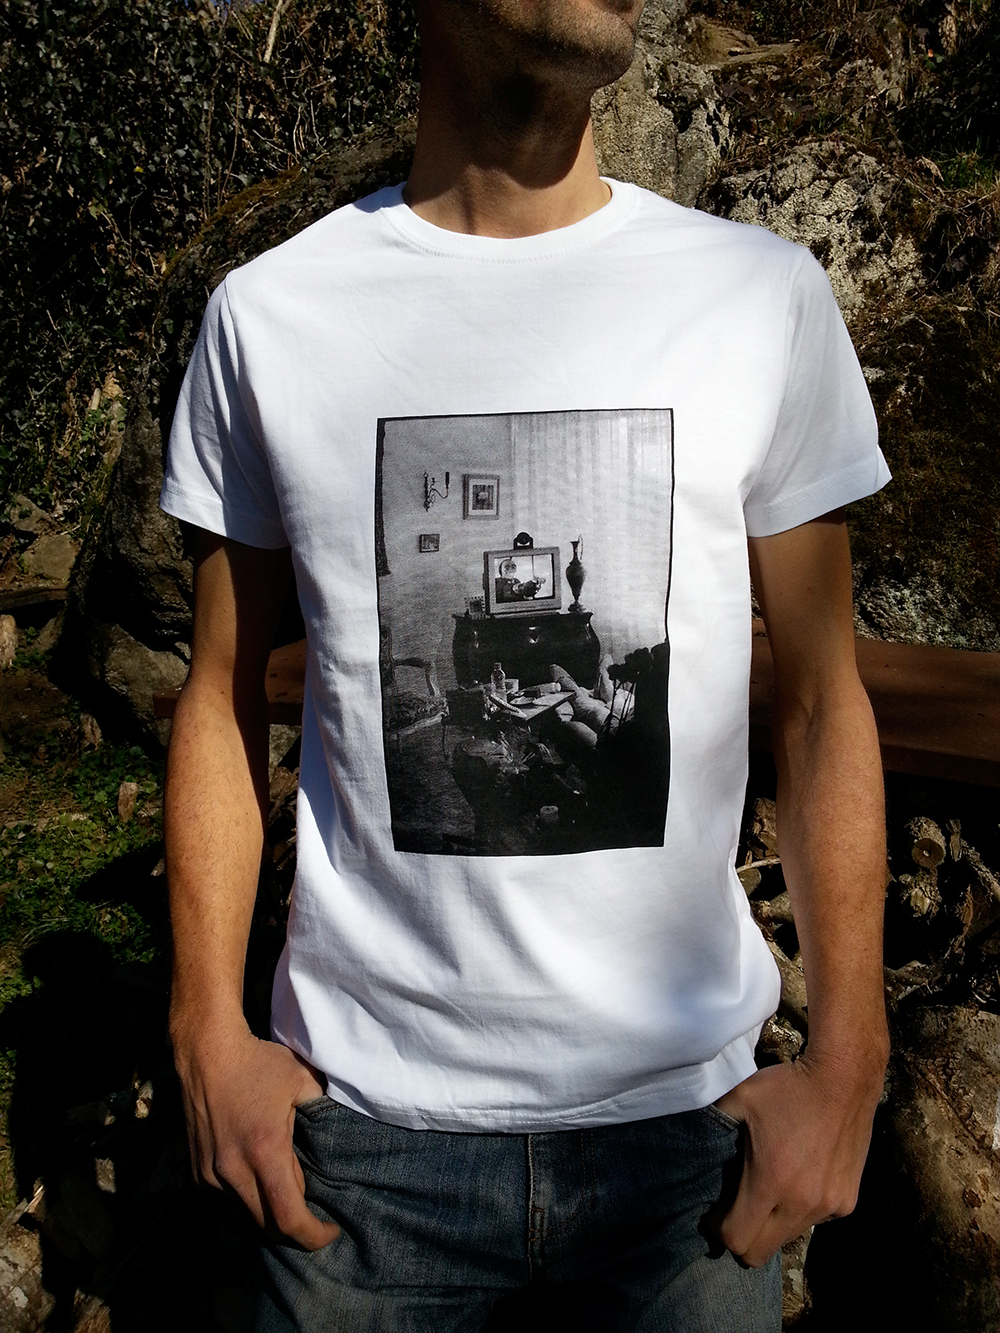 Un homme porte un T-shirt blanc avec sur le torse la sérigraphie d'une photographie noir et blanc de Simon Bezzi Batani